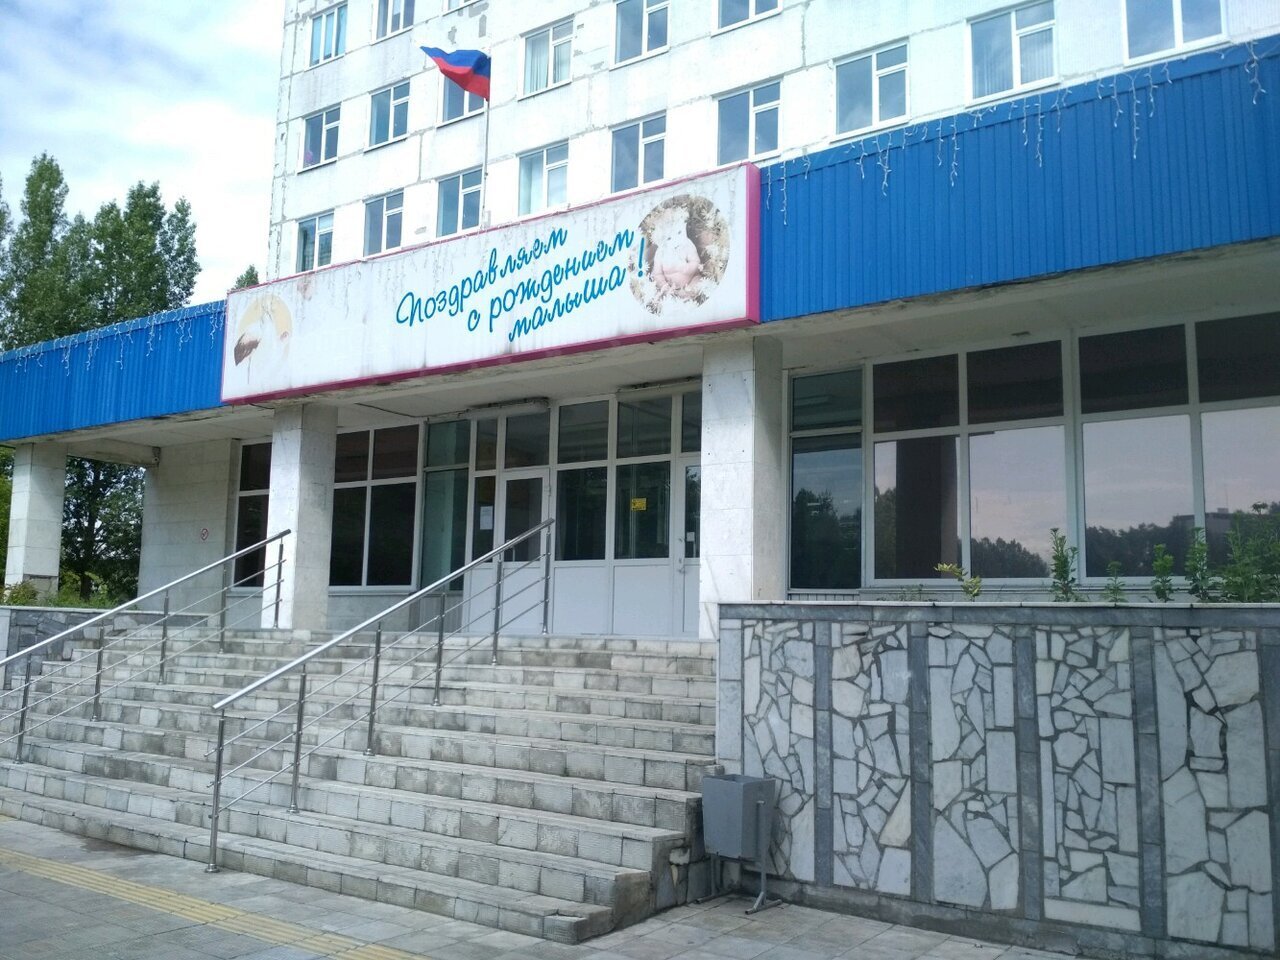 врачи роддома на сурова ульяновск фото